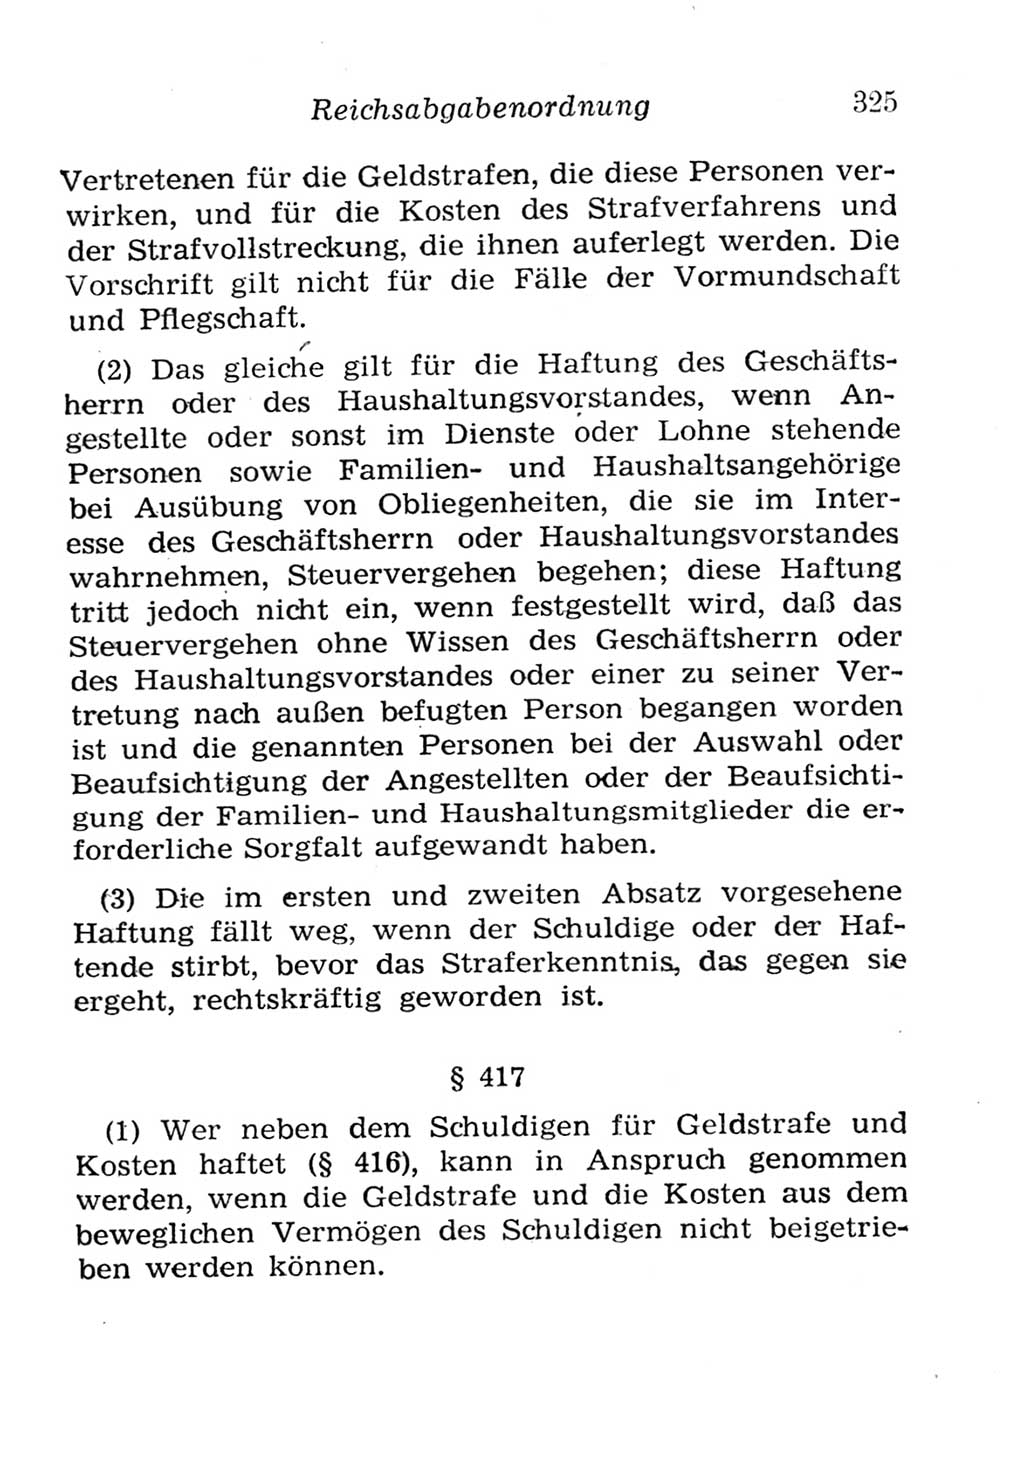 Strafgesetzbuch (StGB) und andere Strafgesetze [Deutsche Demokratische Republik (DDR)] 1957, Seite 325 (StGB Strafges. DDR 1957, S. 325)